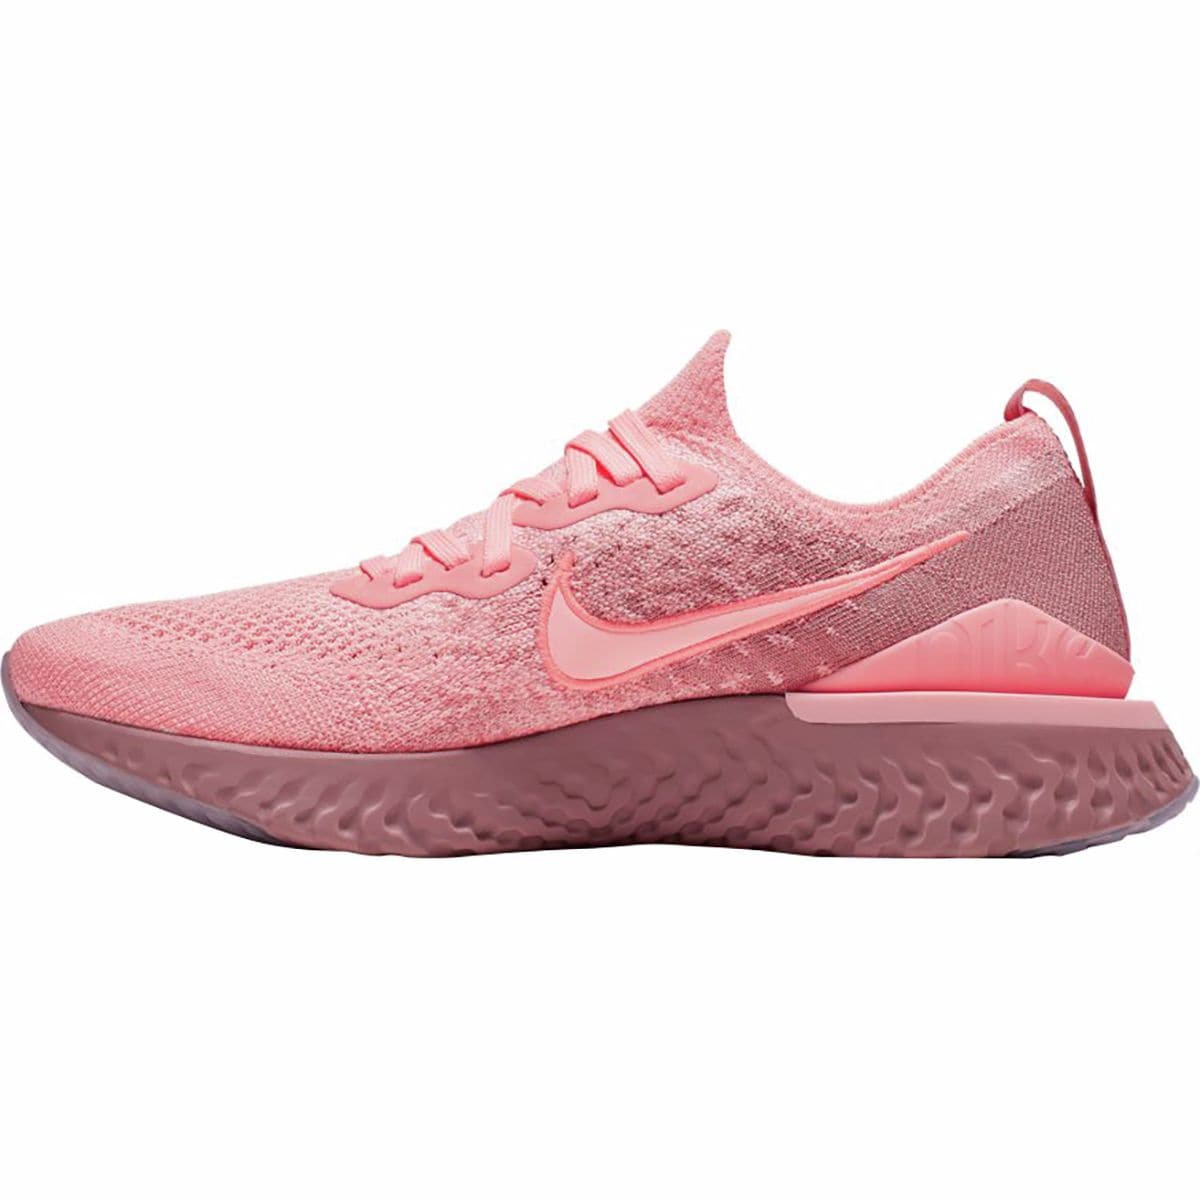 Nike Epic React Flyknit Running Shoe - Women's - Footwear